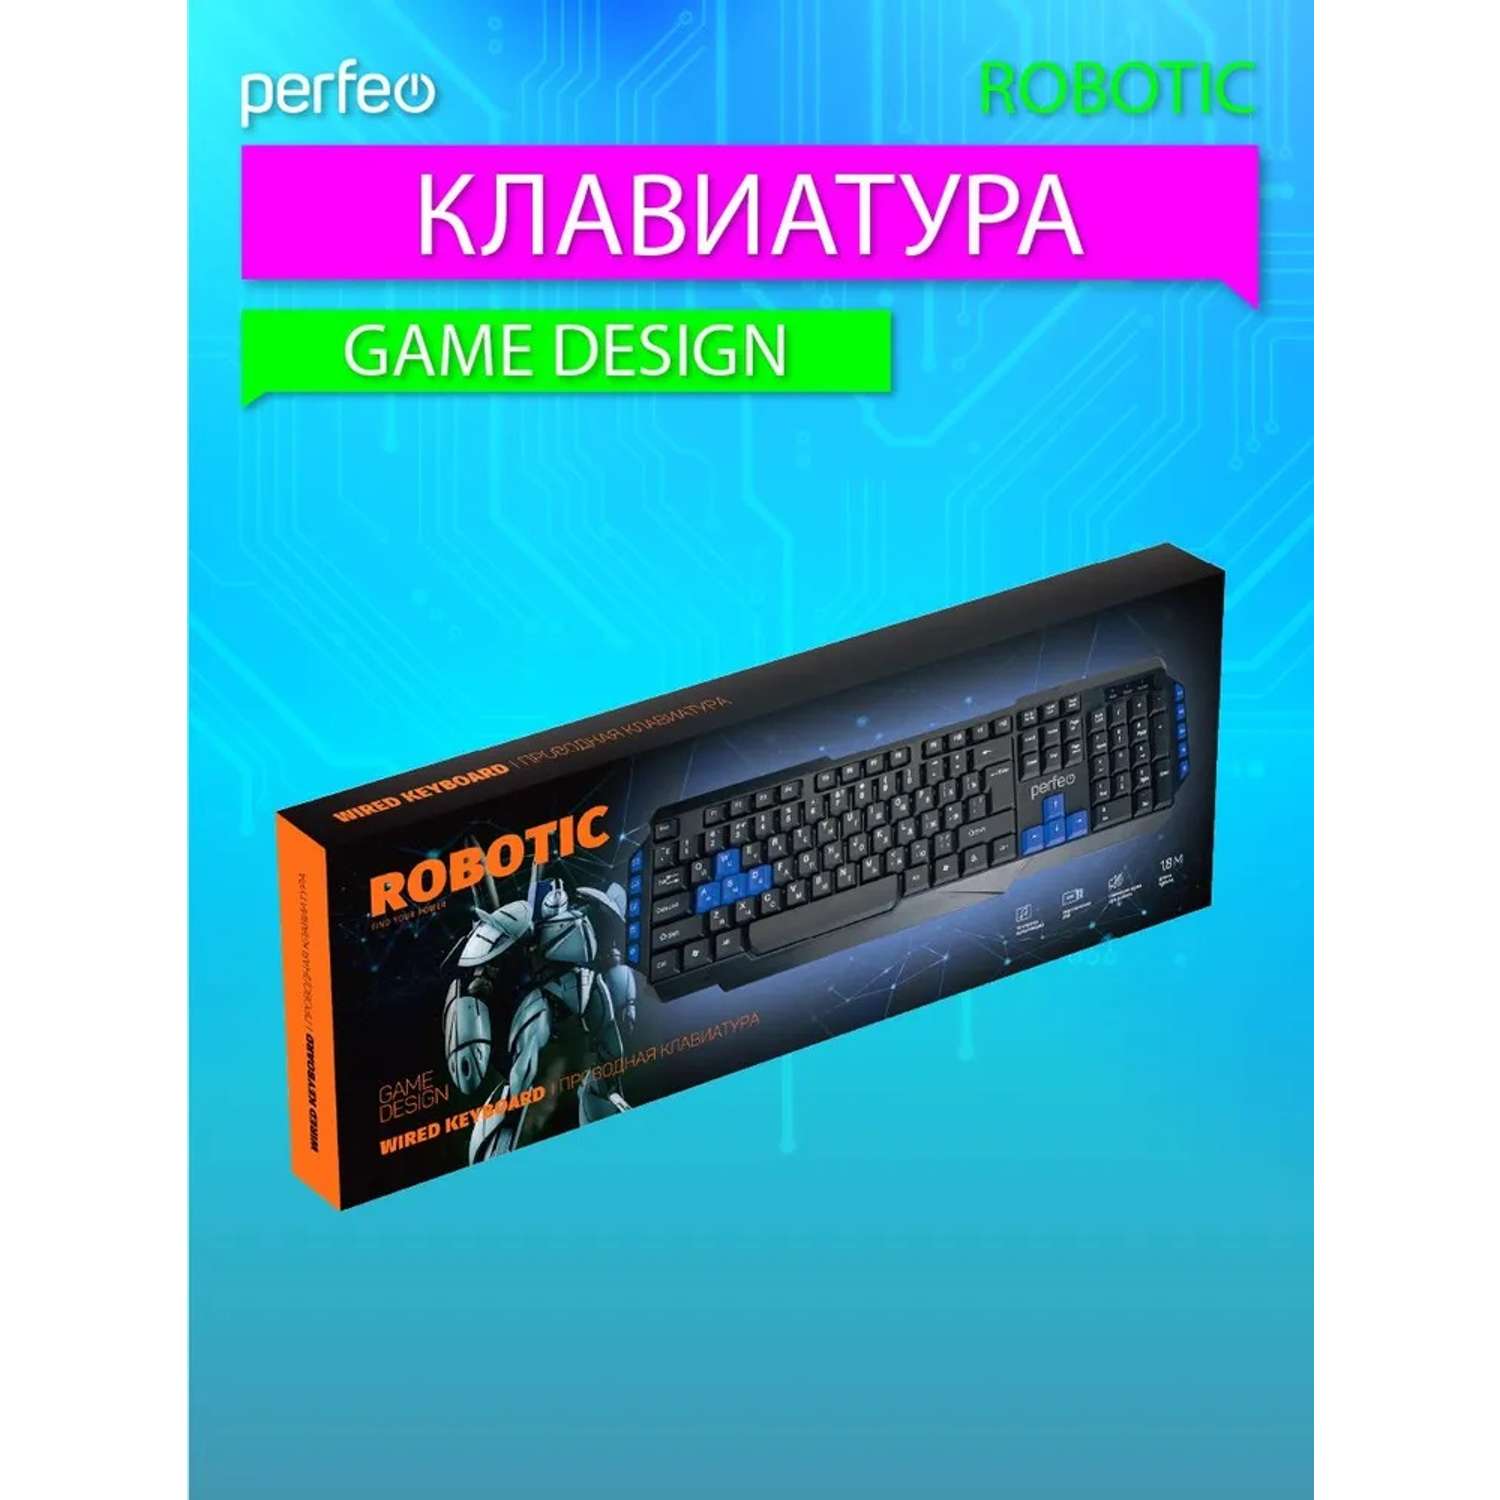 Клавиатура проводная Perfeo ROBOTIC Game Design Multimedia USB чёрная - фото 5